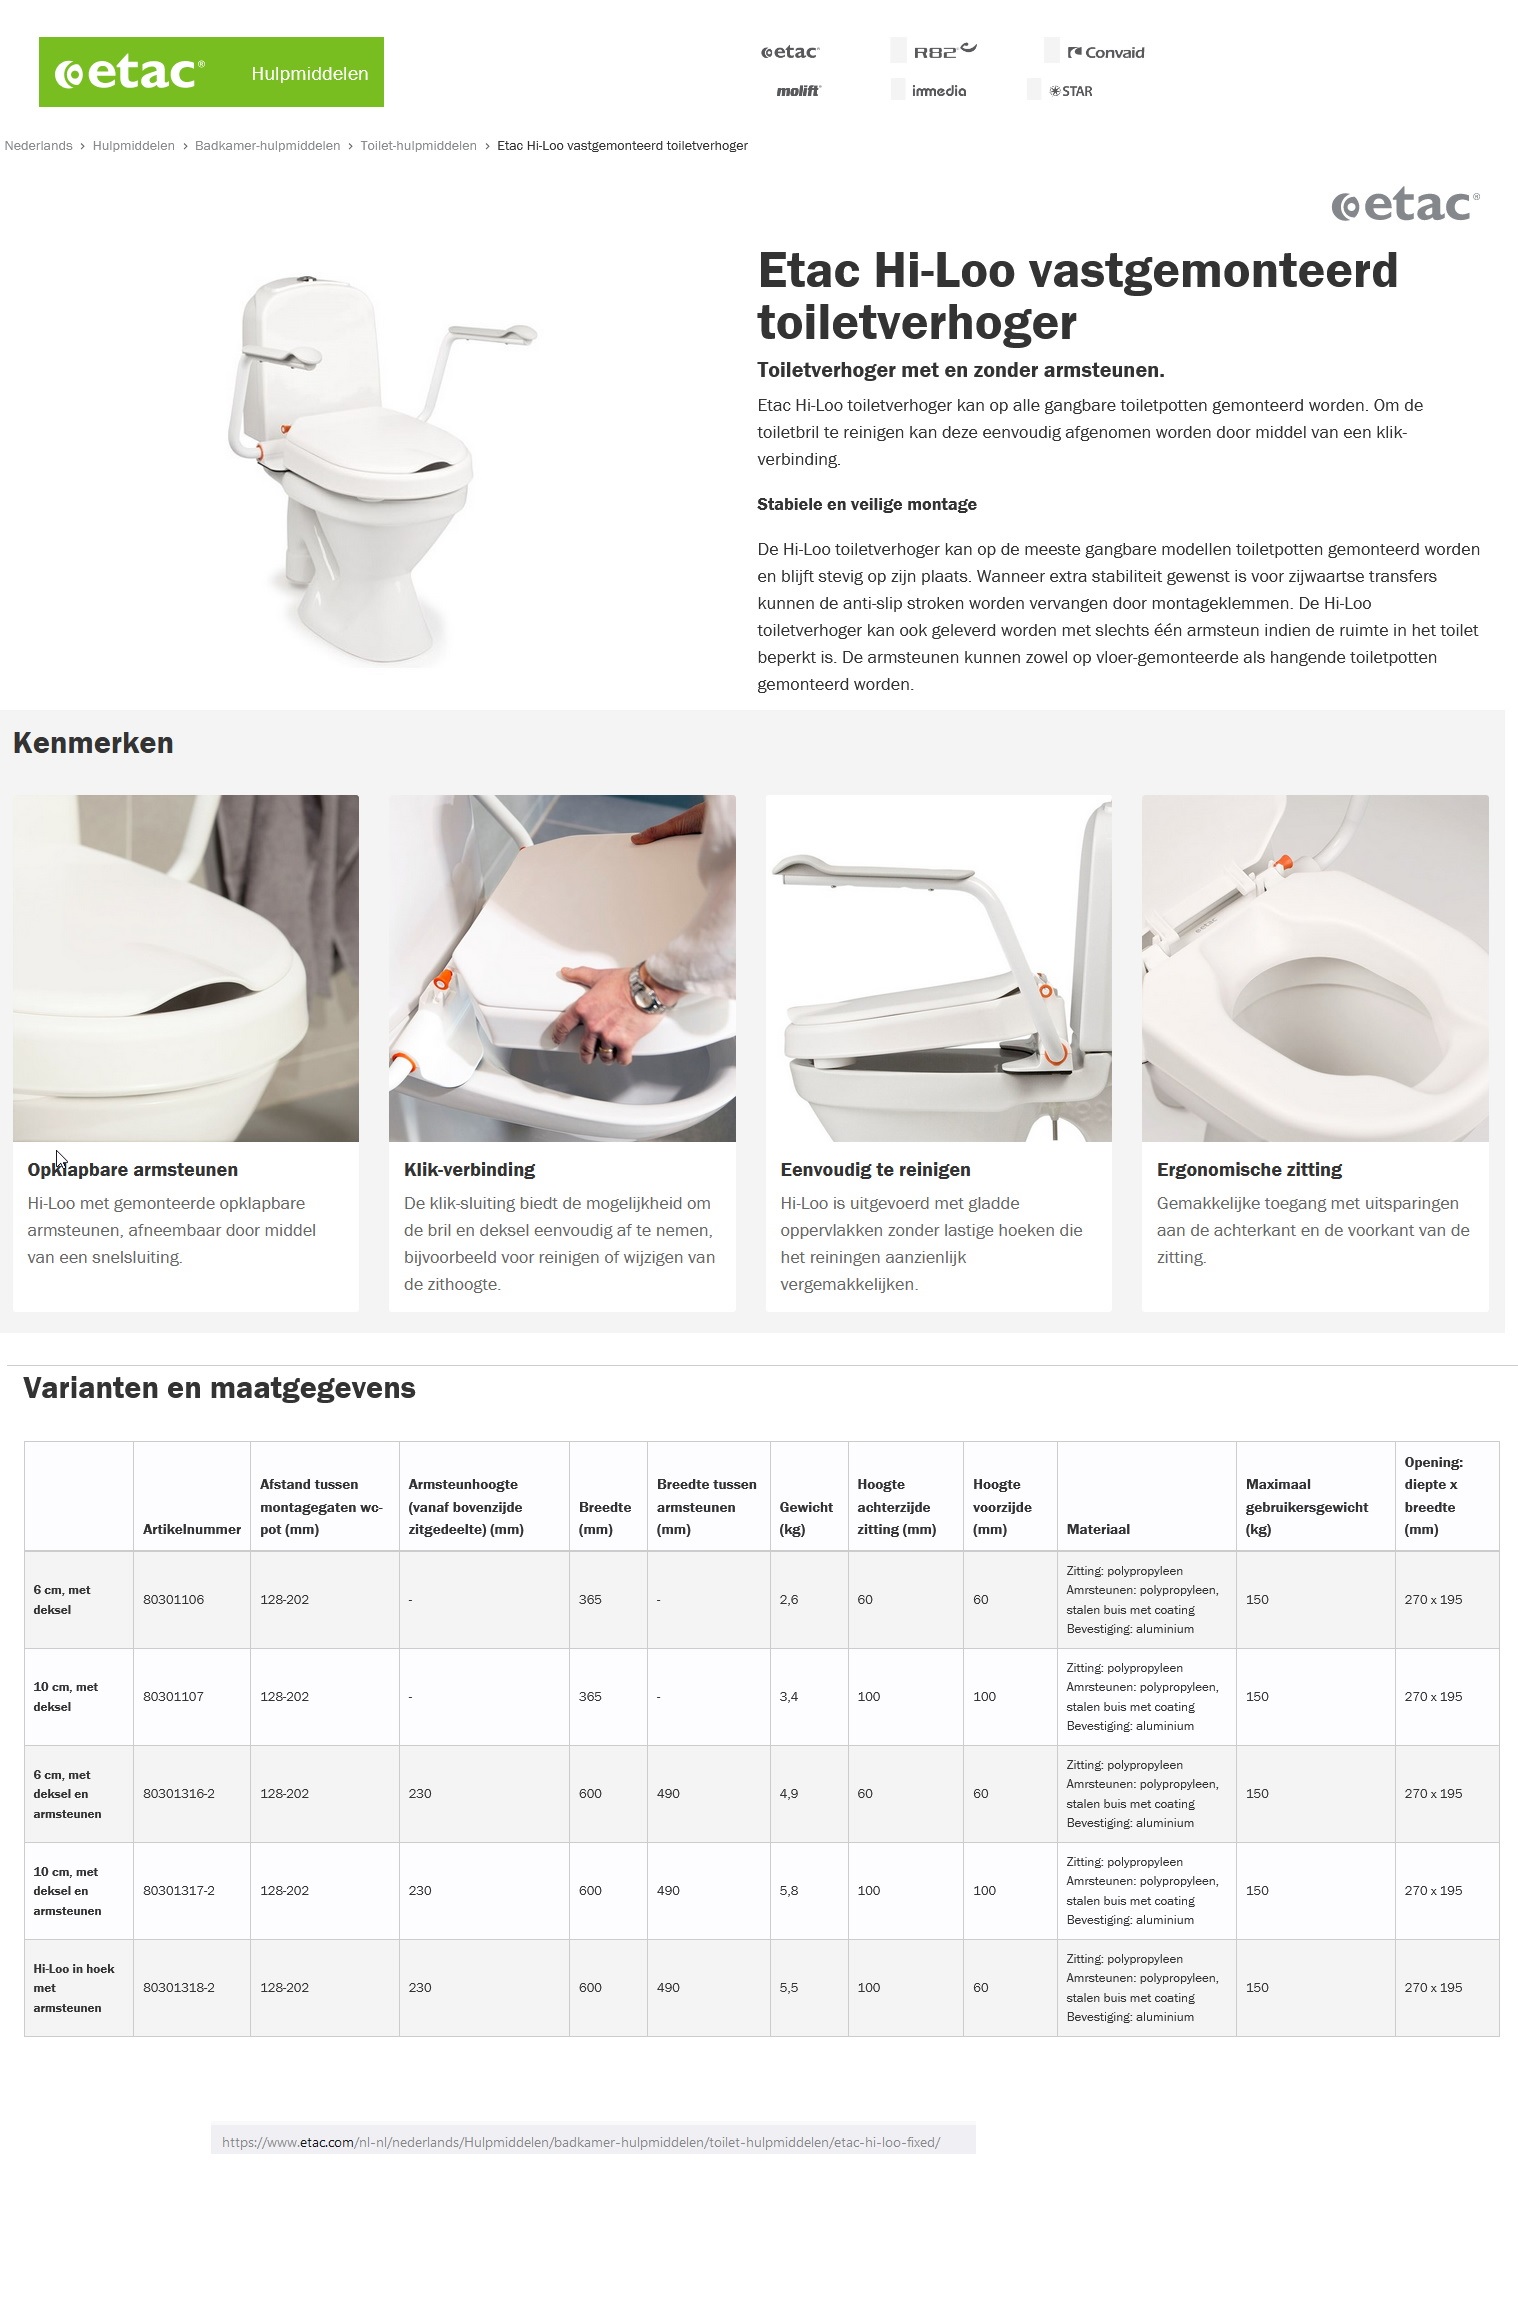 toegevoegd document 2 van Hi-Loo vastklik Toiletverhoger met opklapbare armsteunen  